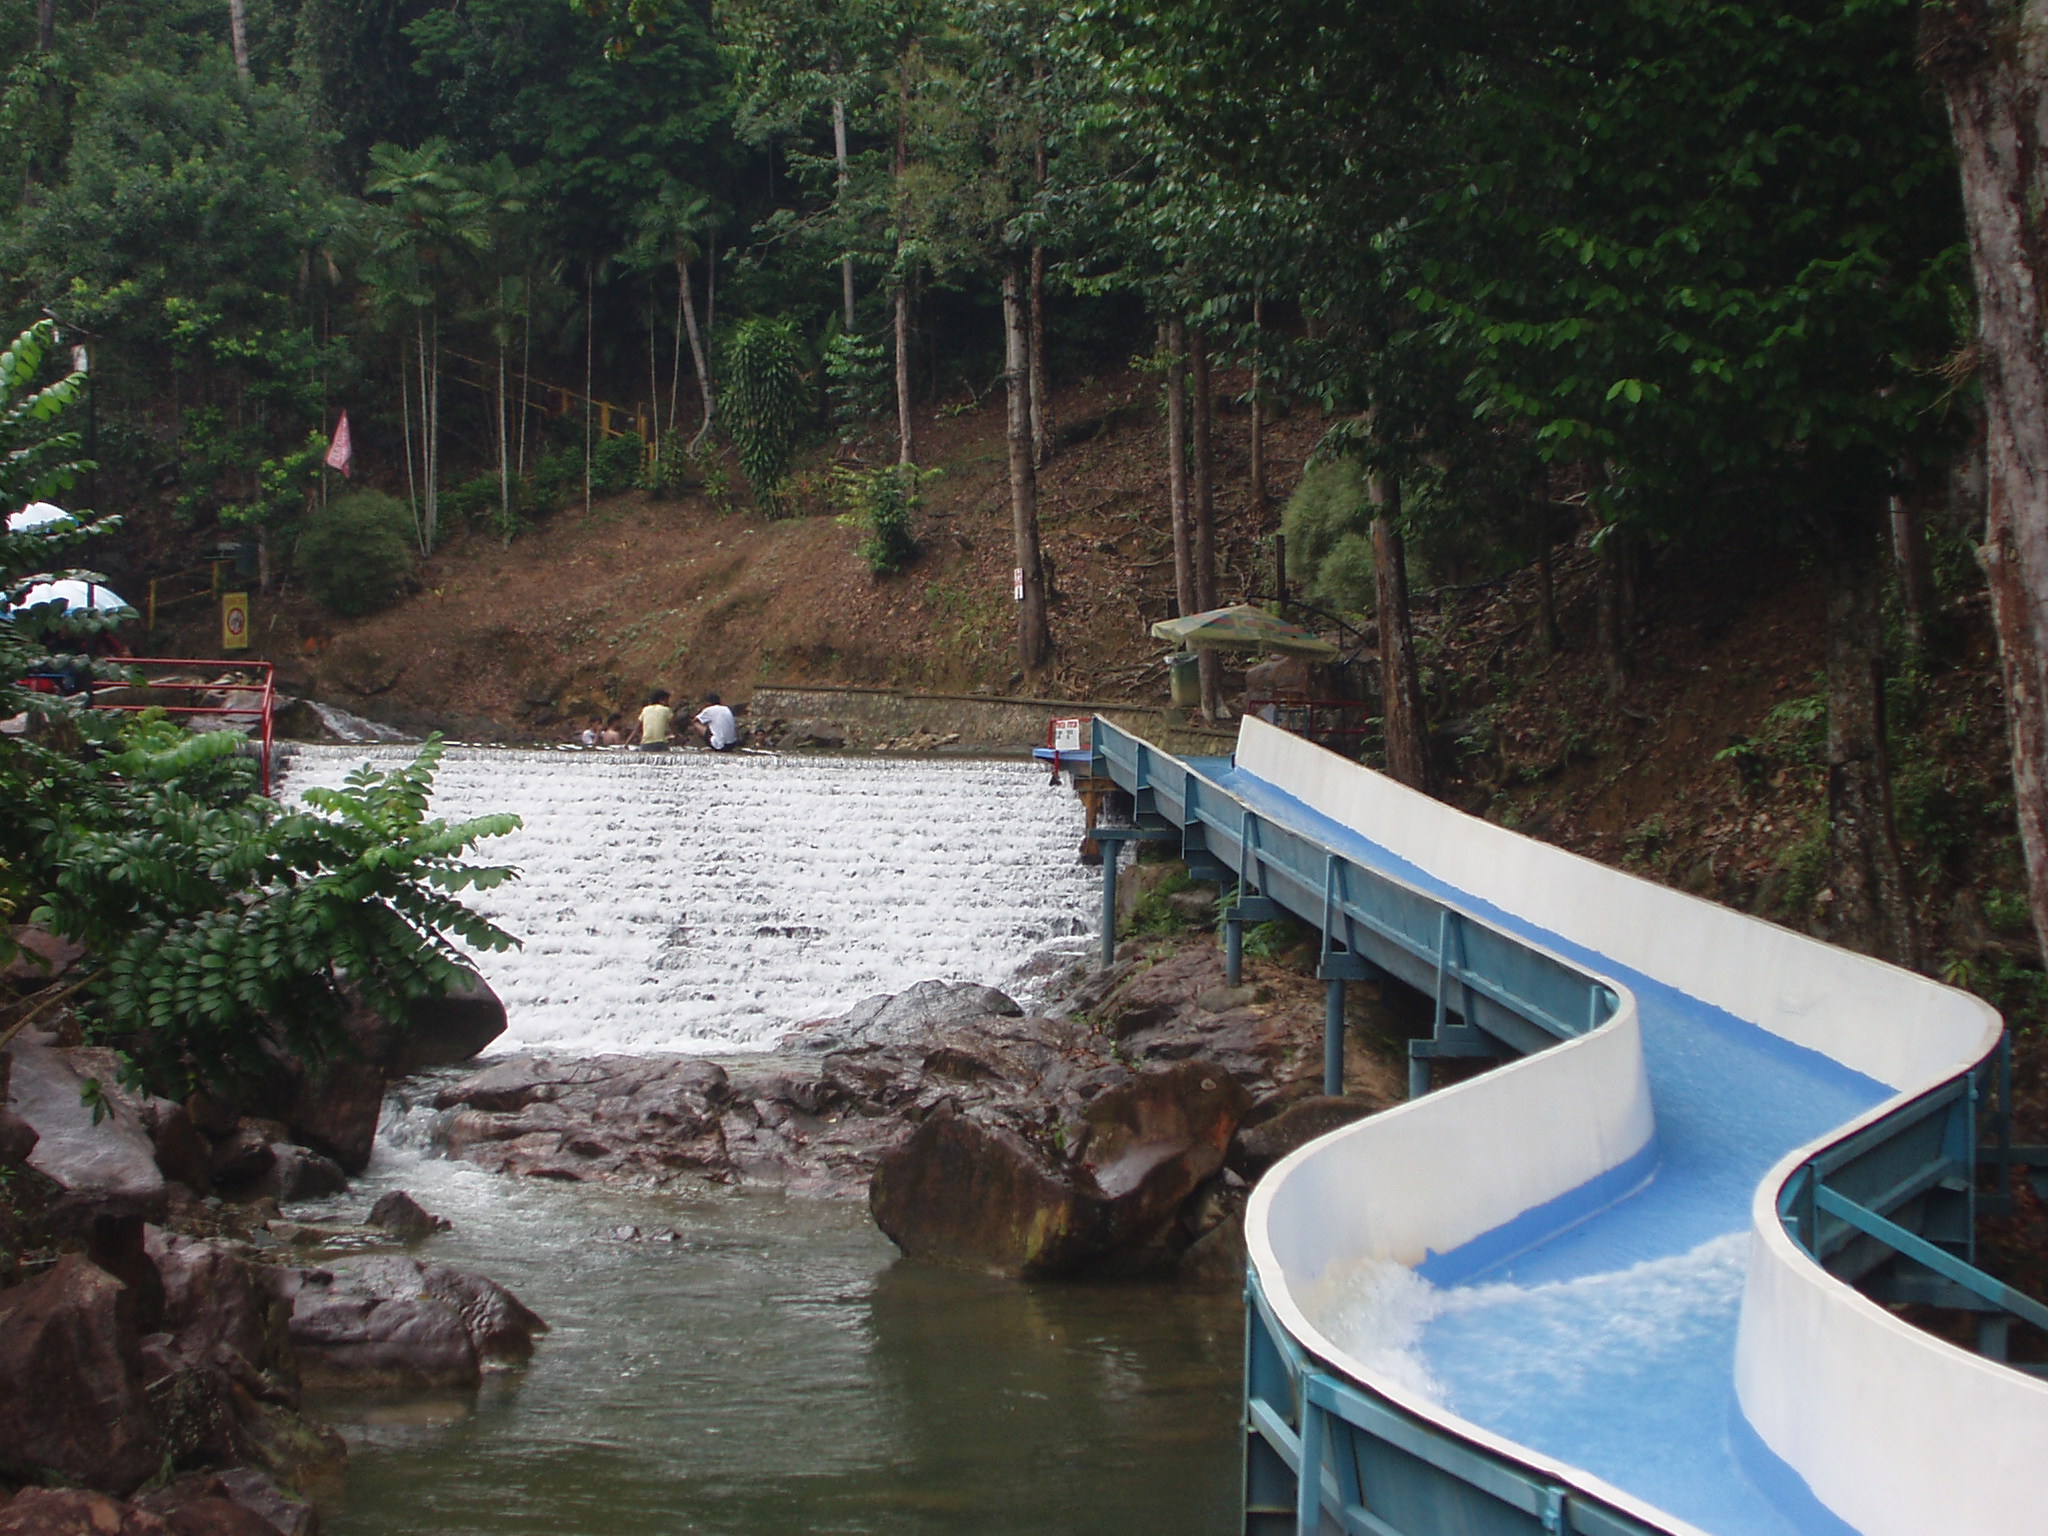 Kota Tinggi Waterfalls, Johor – Monsters with Flipflops